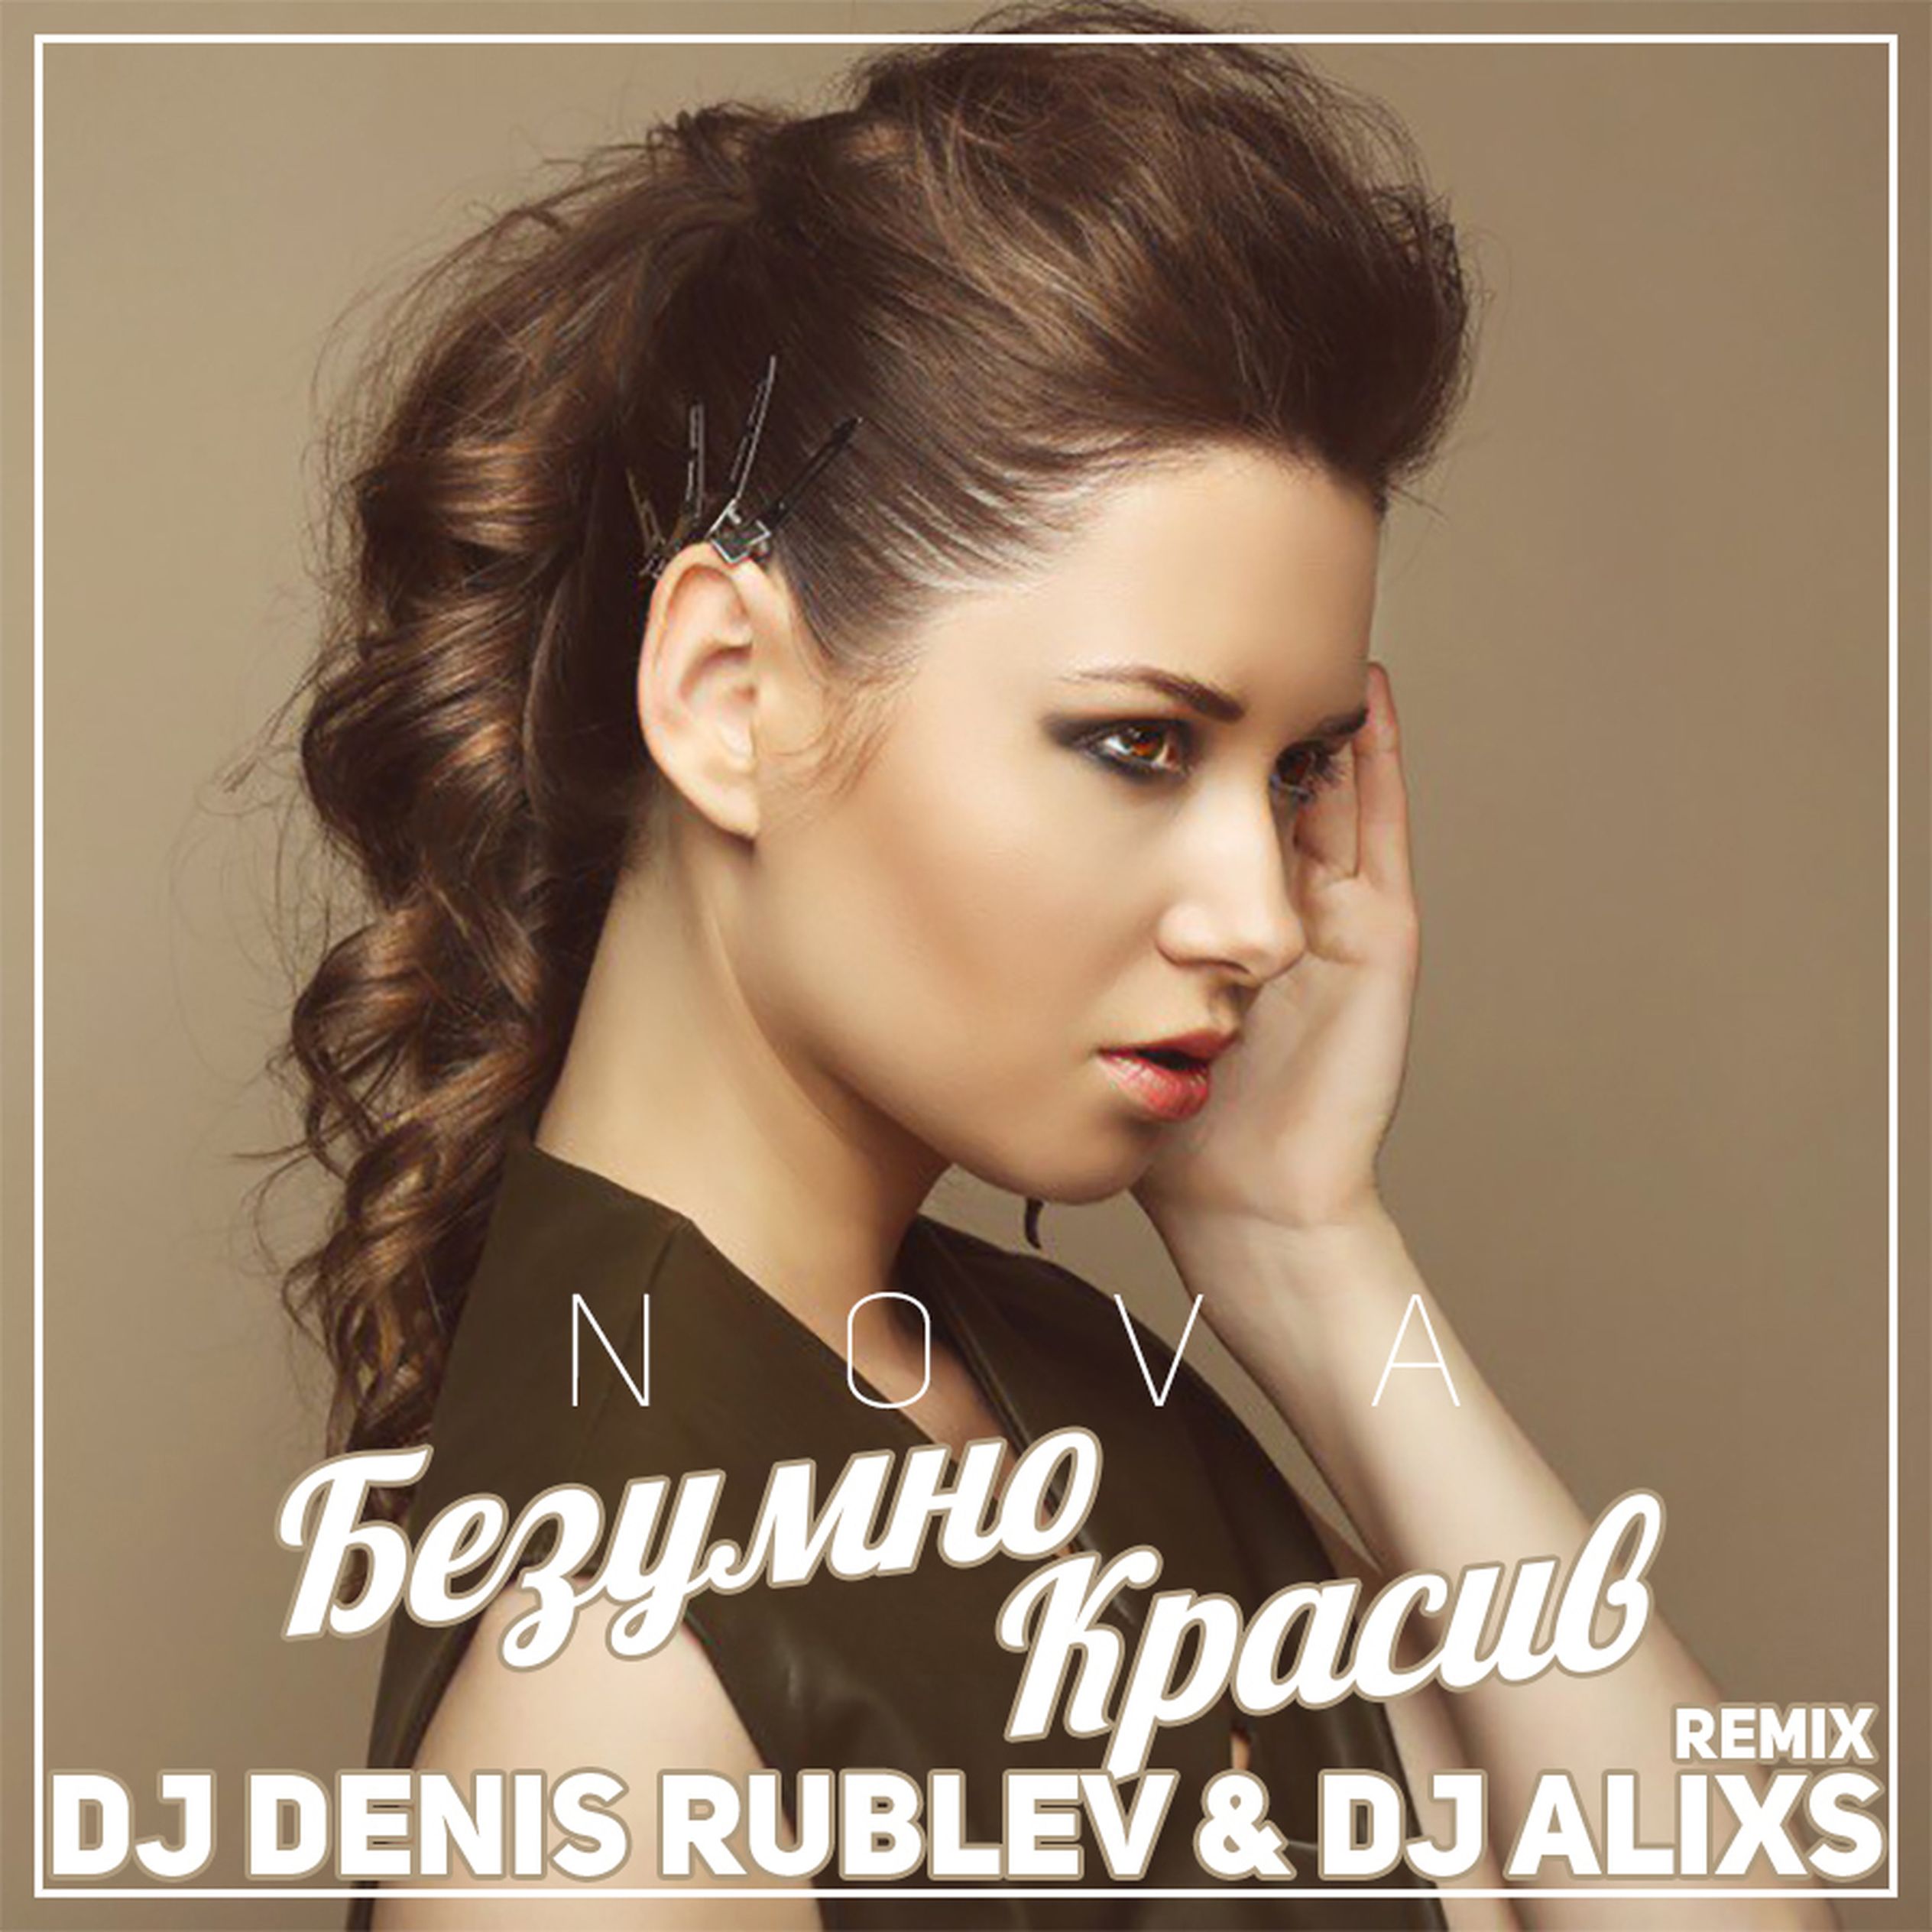 Nova-безумно красив. DJ Denis Rublev. Denis first Remix. DJ Denis Rublev - malchik moy Remix. Слушать прекрасные ремиксы